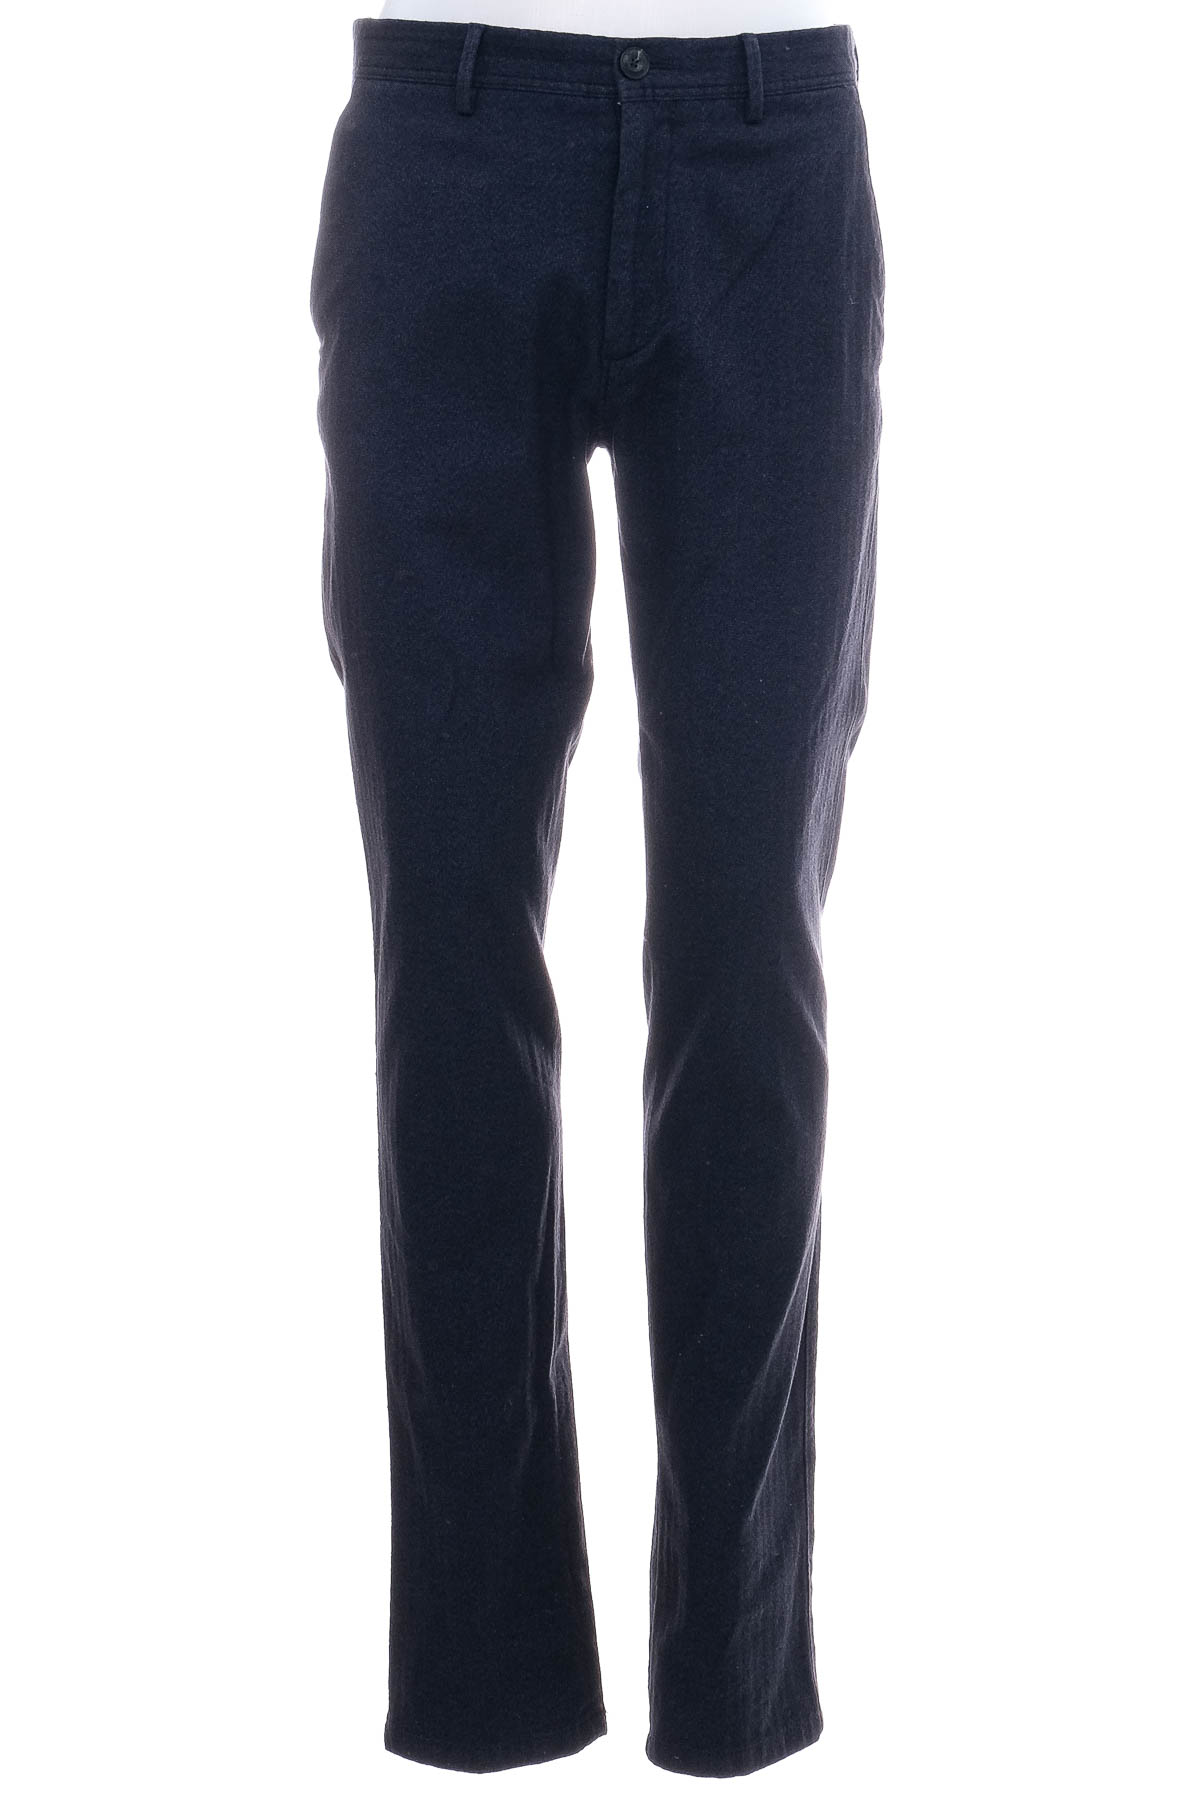 Ανδρικά παντελόνια - Massimo Dutti - 0